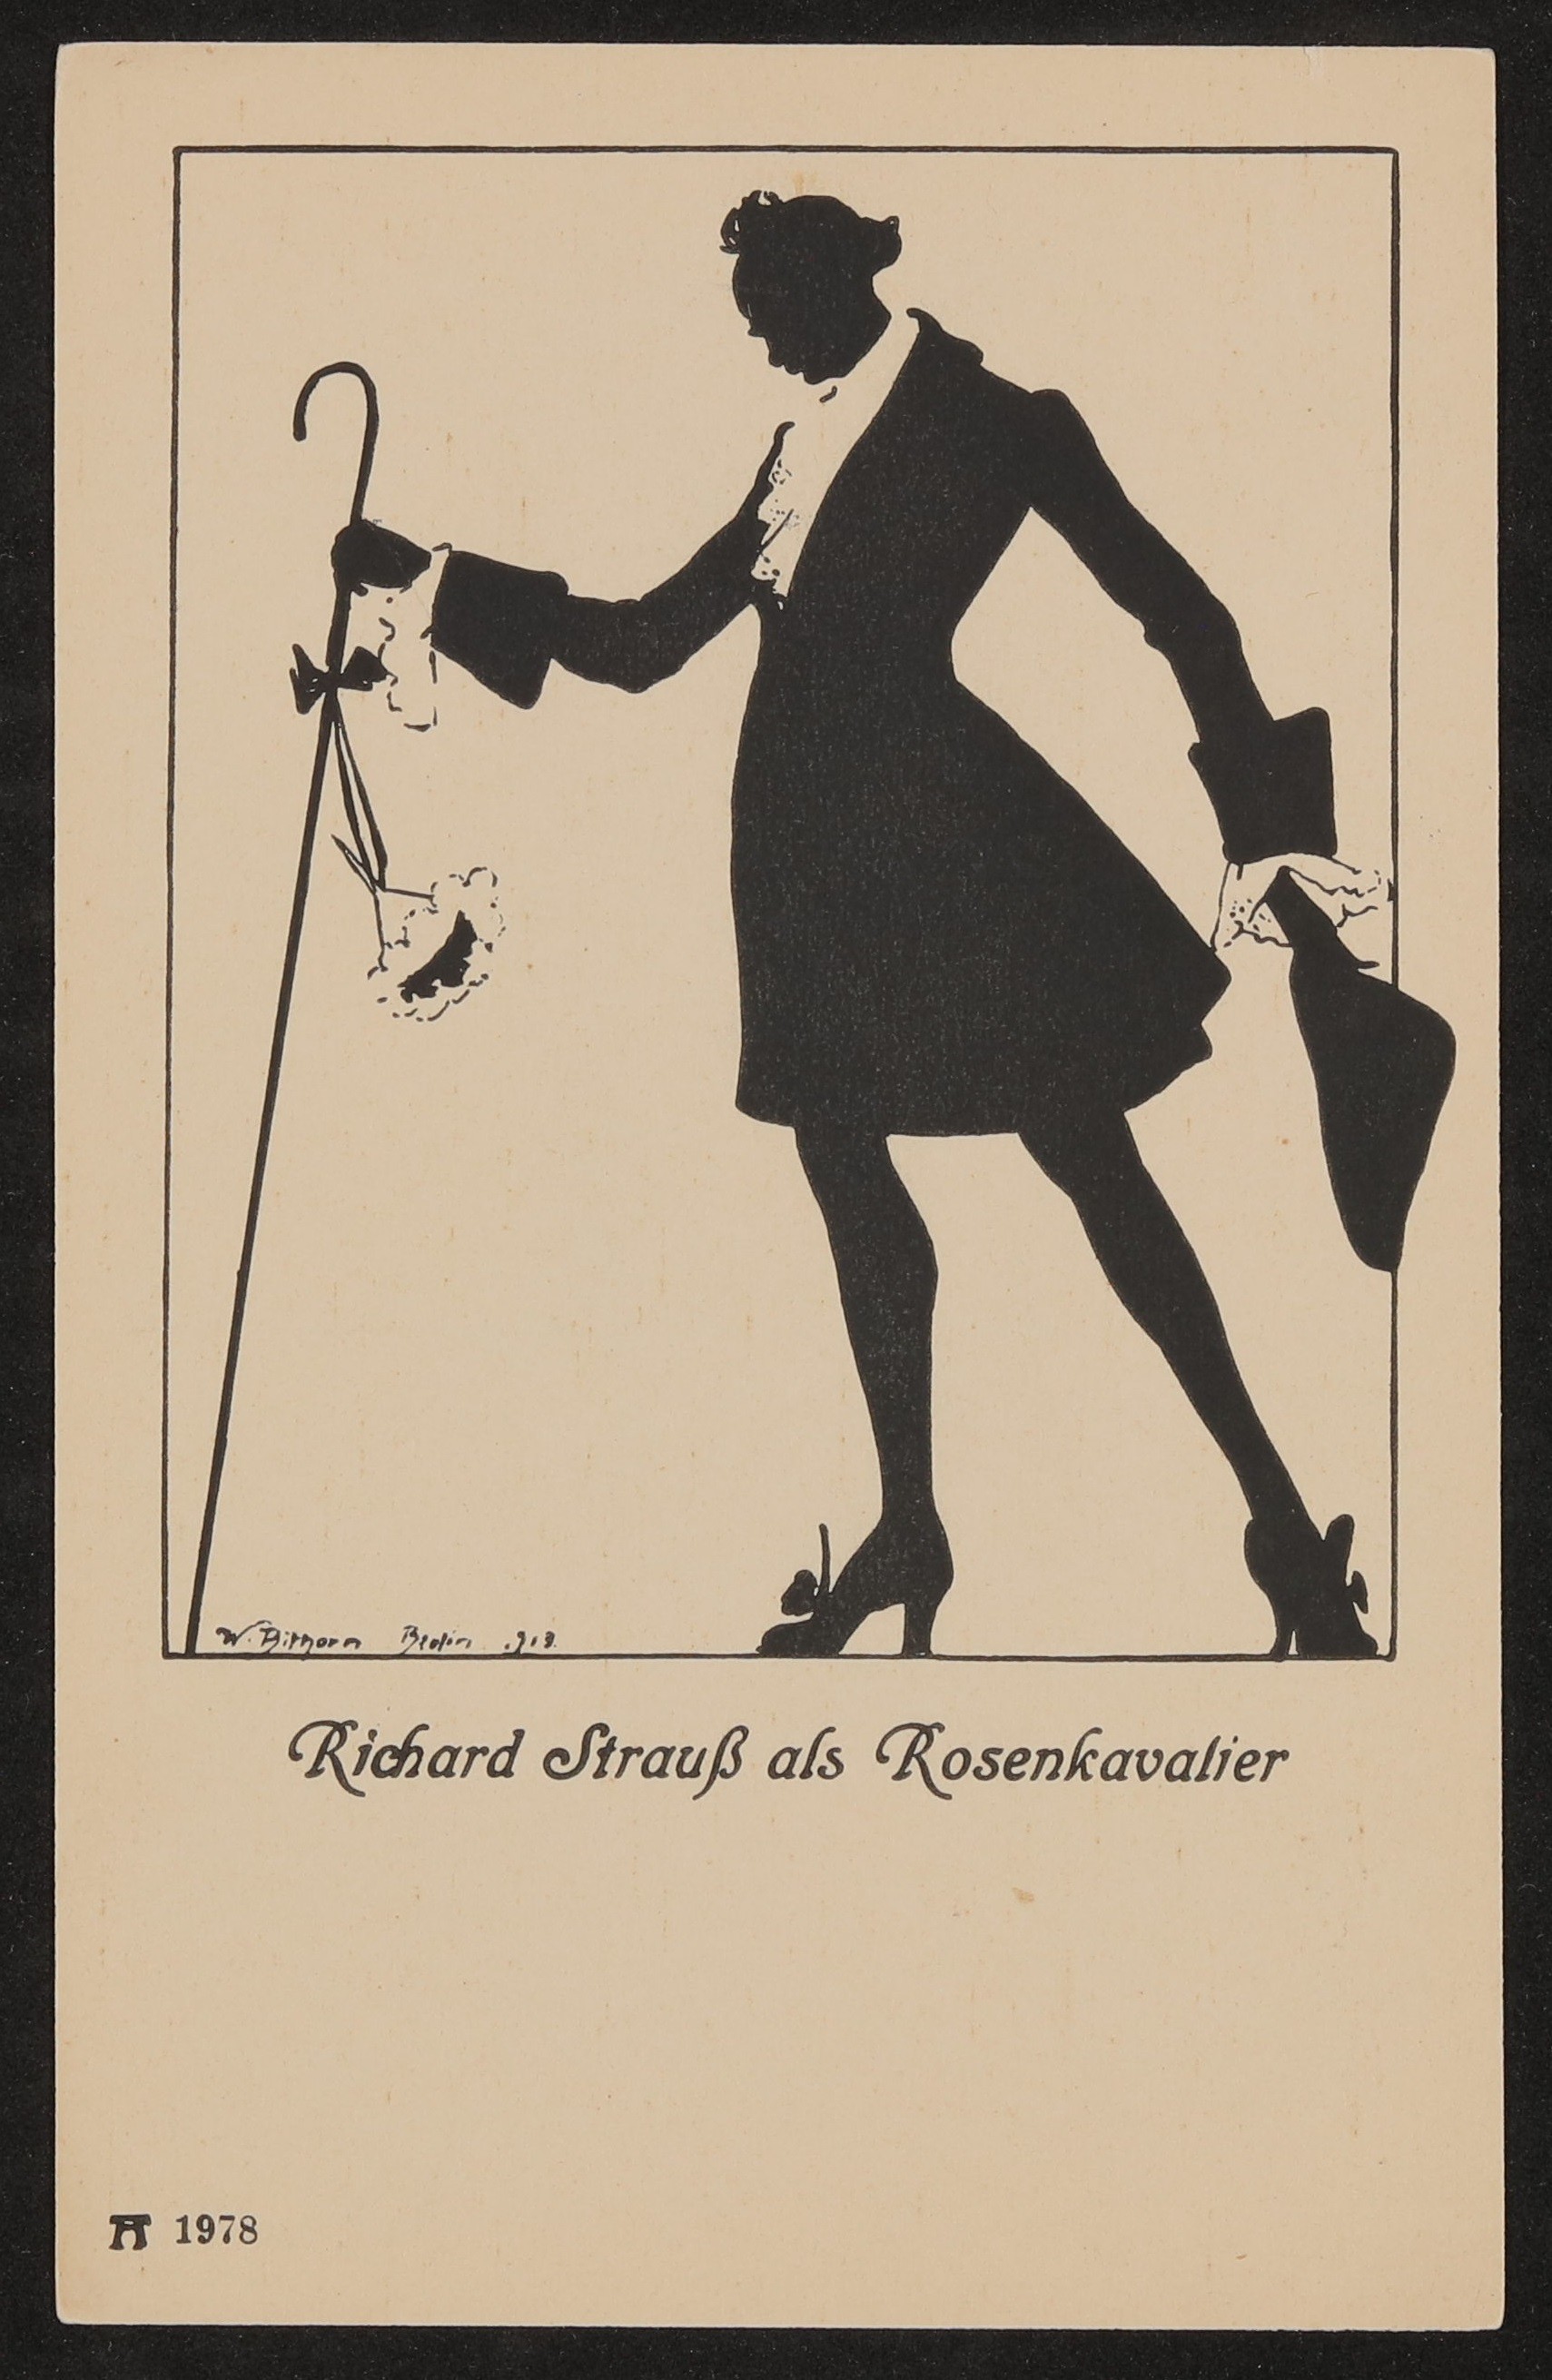 Ansichtskarte mit Silhouette von "Richard Strauß als Rosenkavalier" (Freies Deutsches Hochstift / Frankfurter Goethe-Museum CC BY-NC-SA)